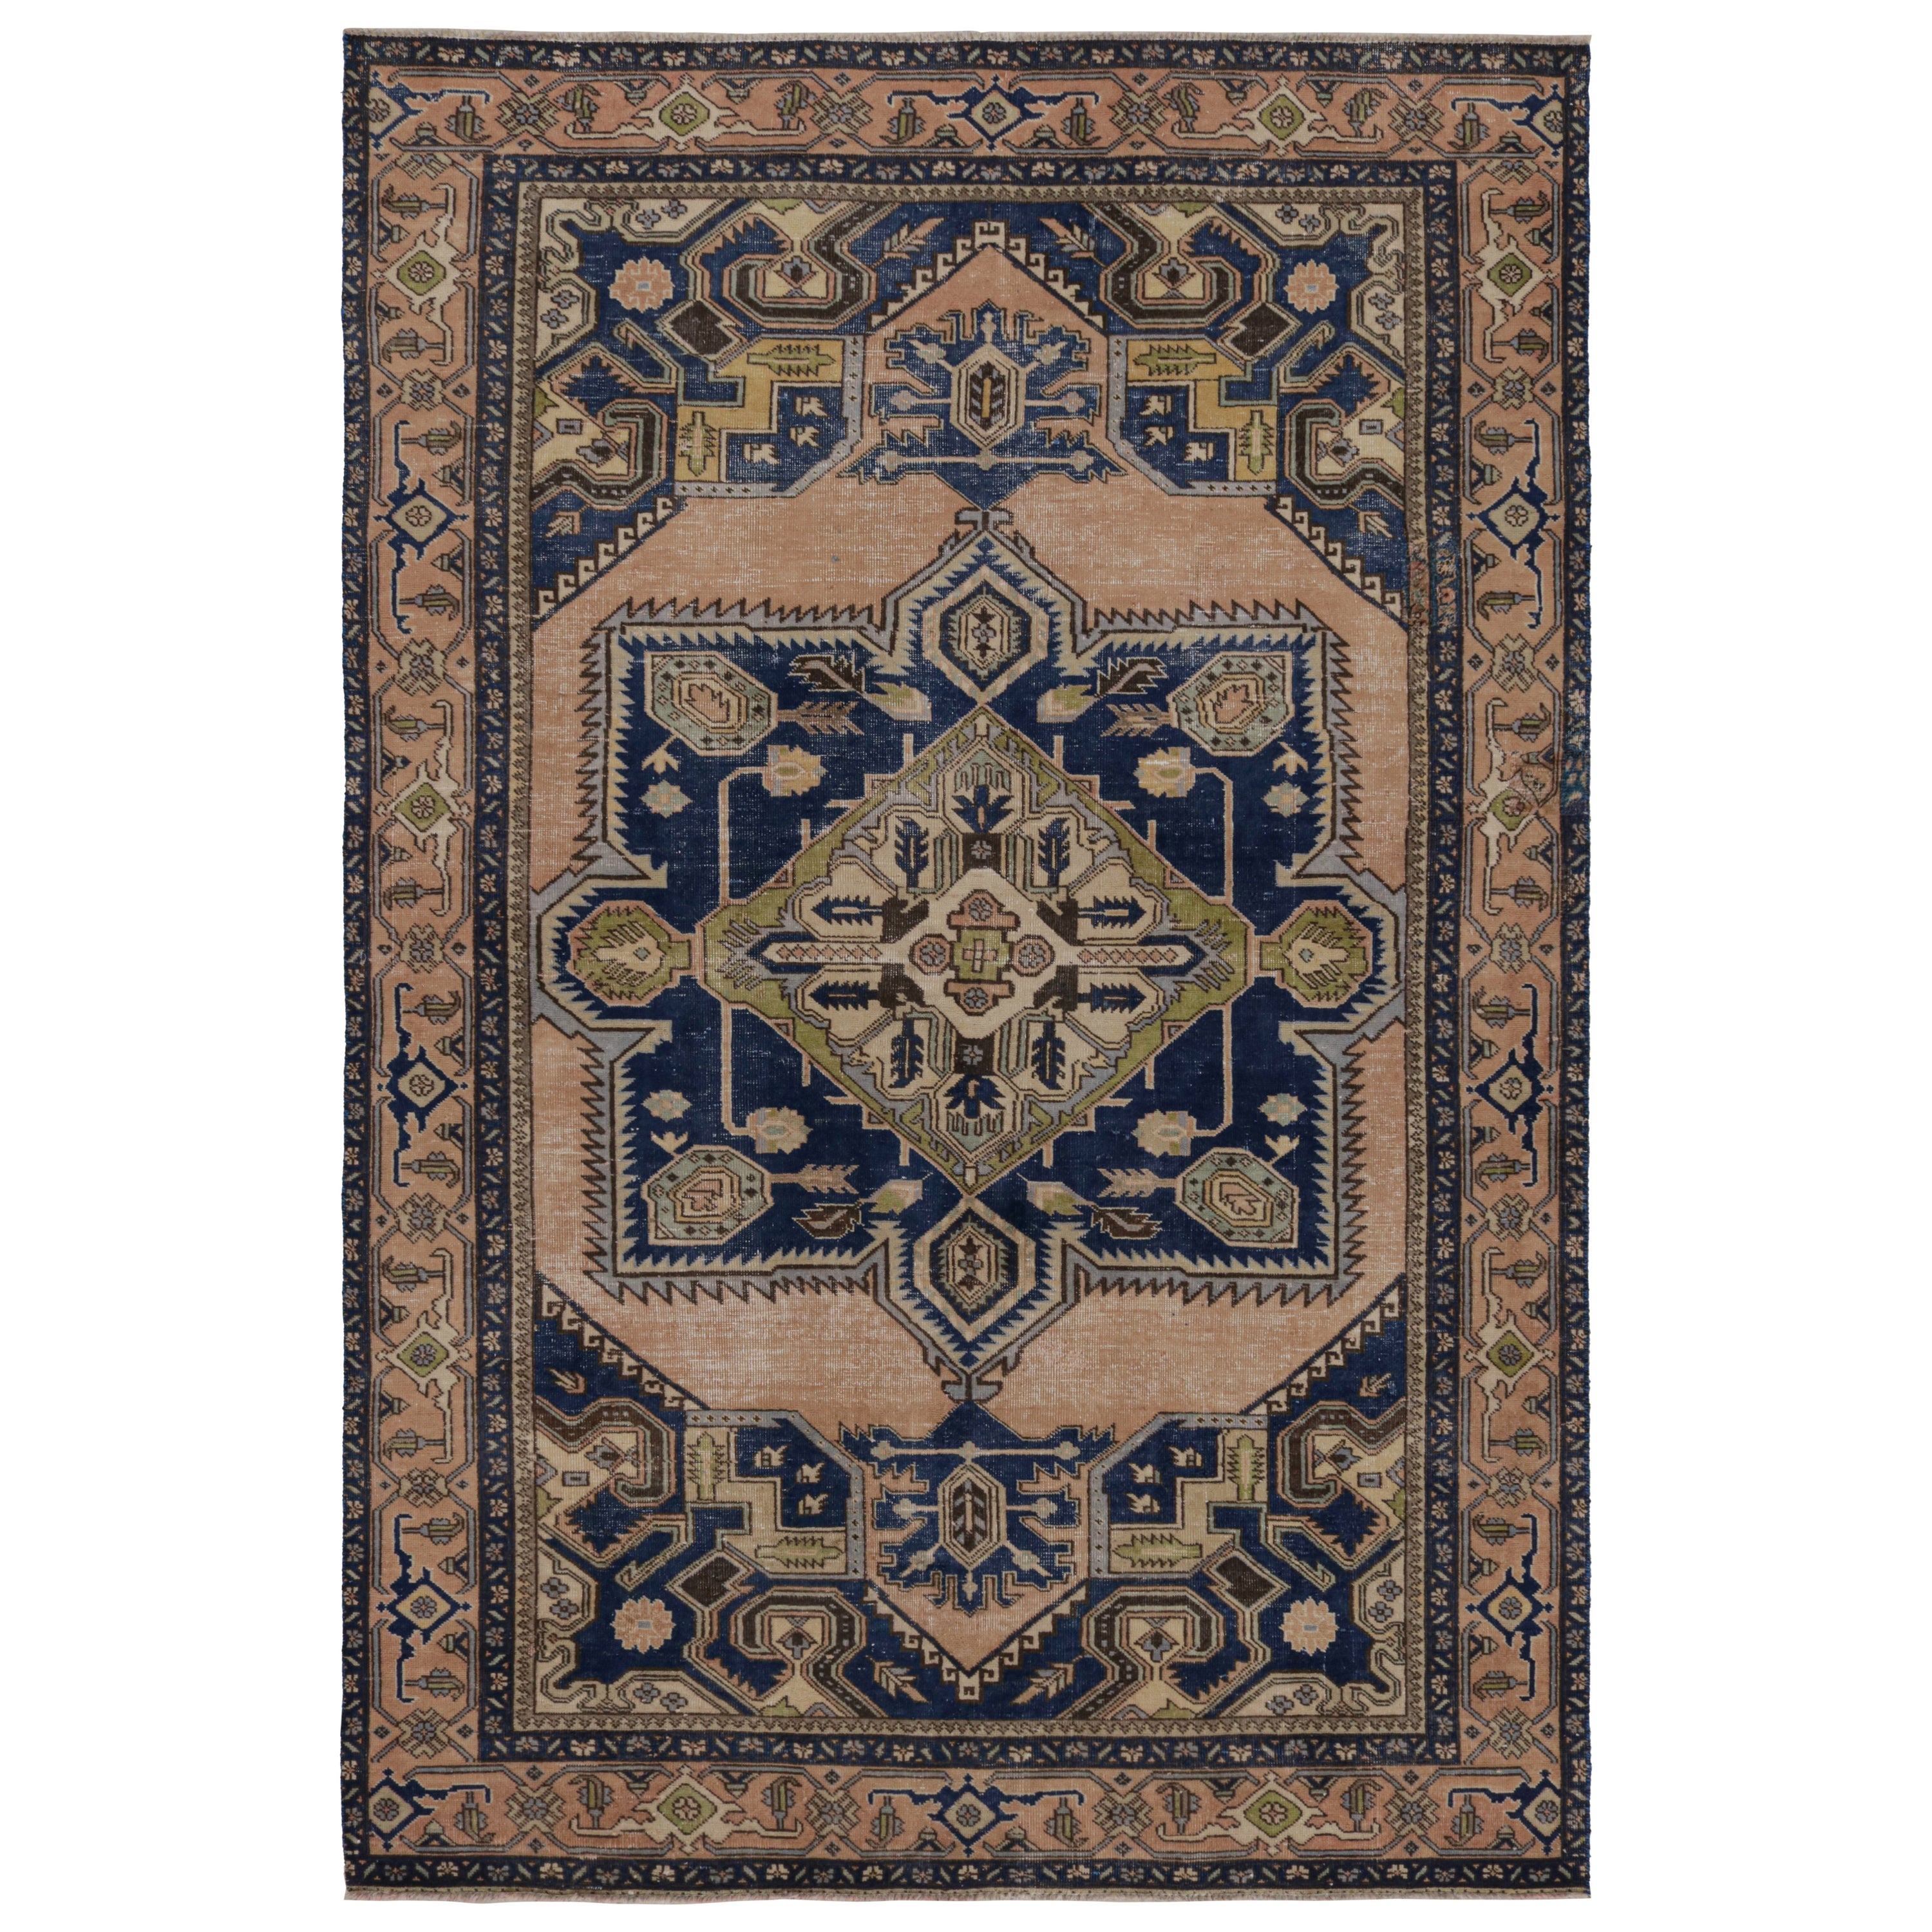 Vintage Tabriz rug in Beige-Brown and Blue Geometric Patterns by Rug & Kilim